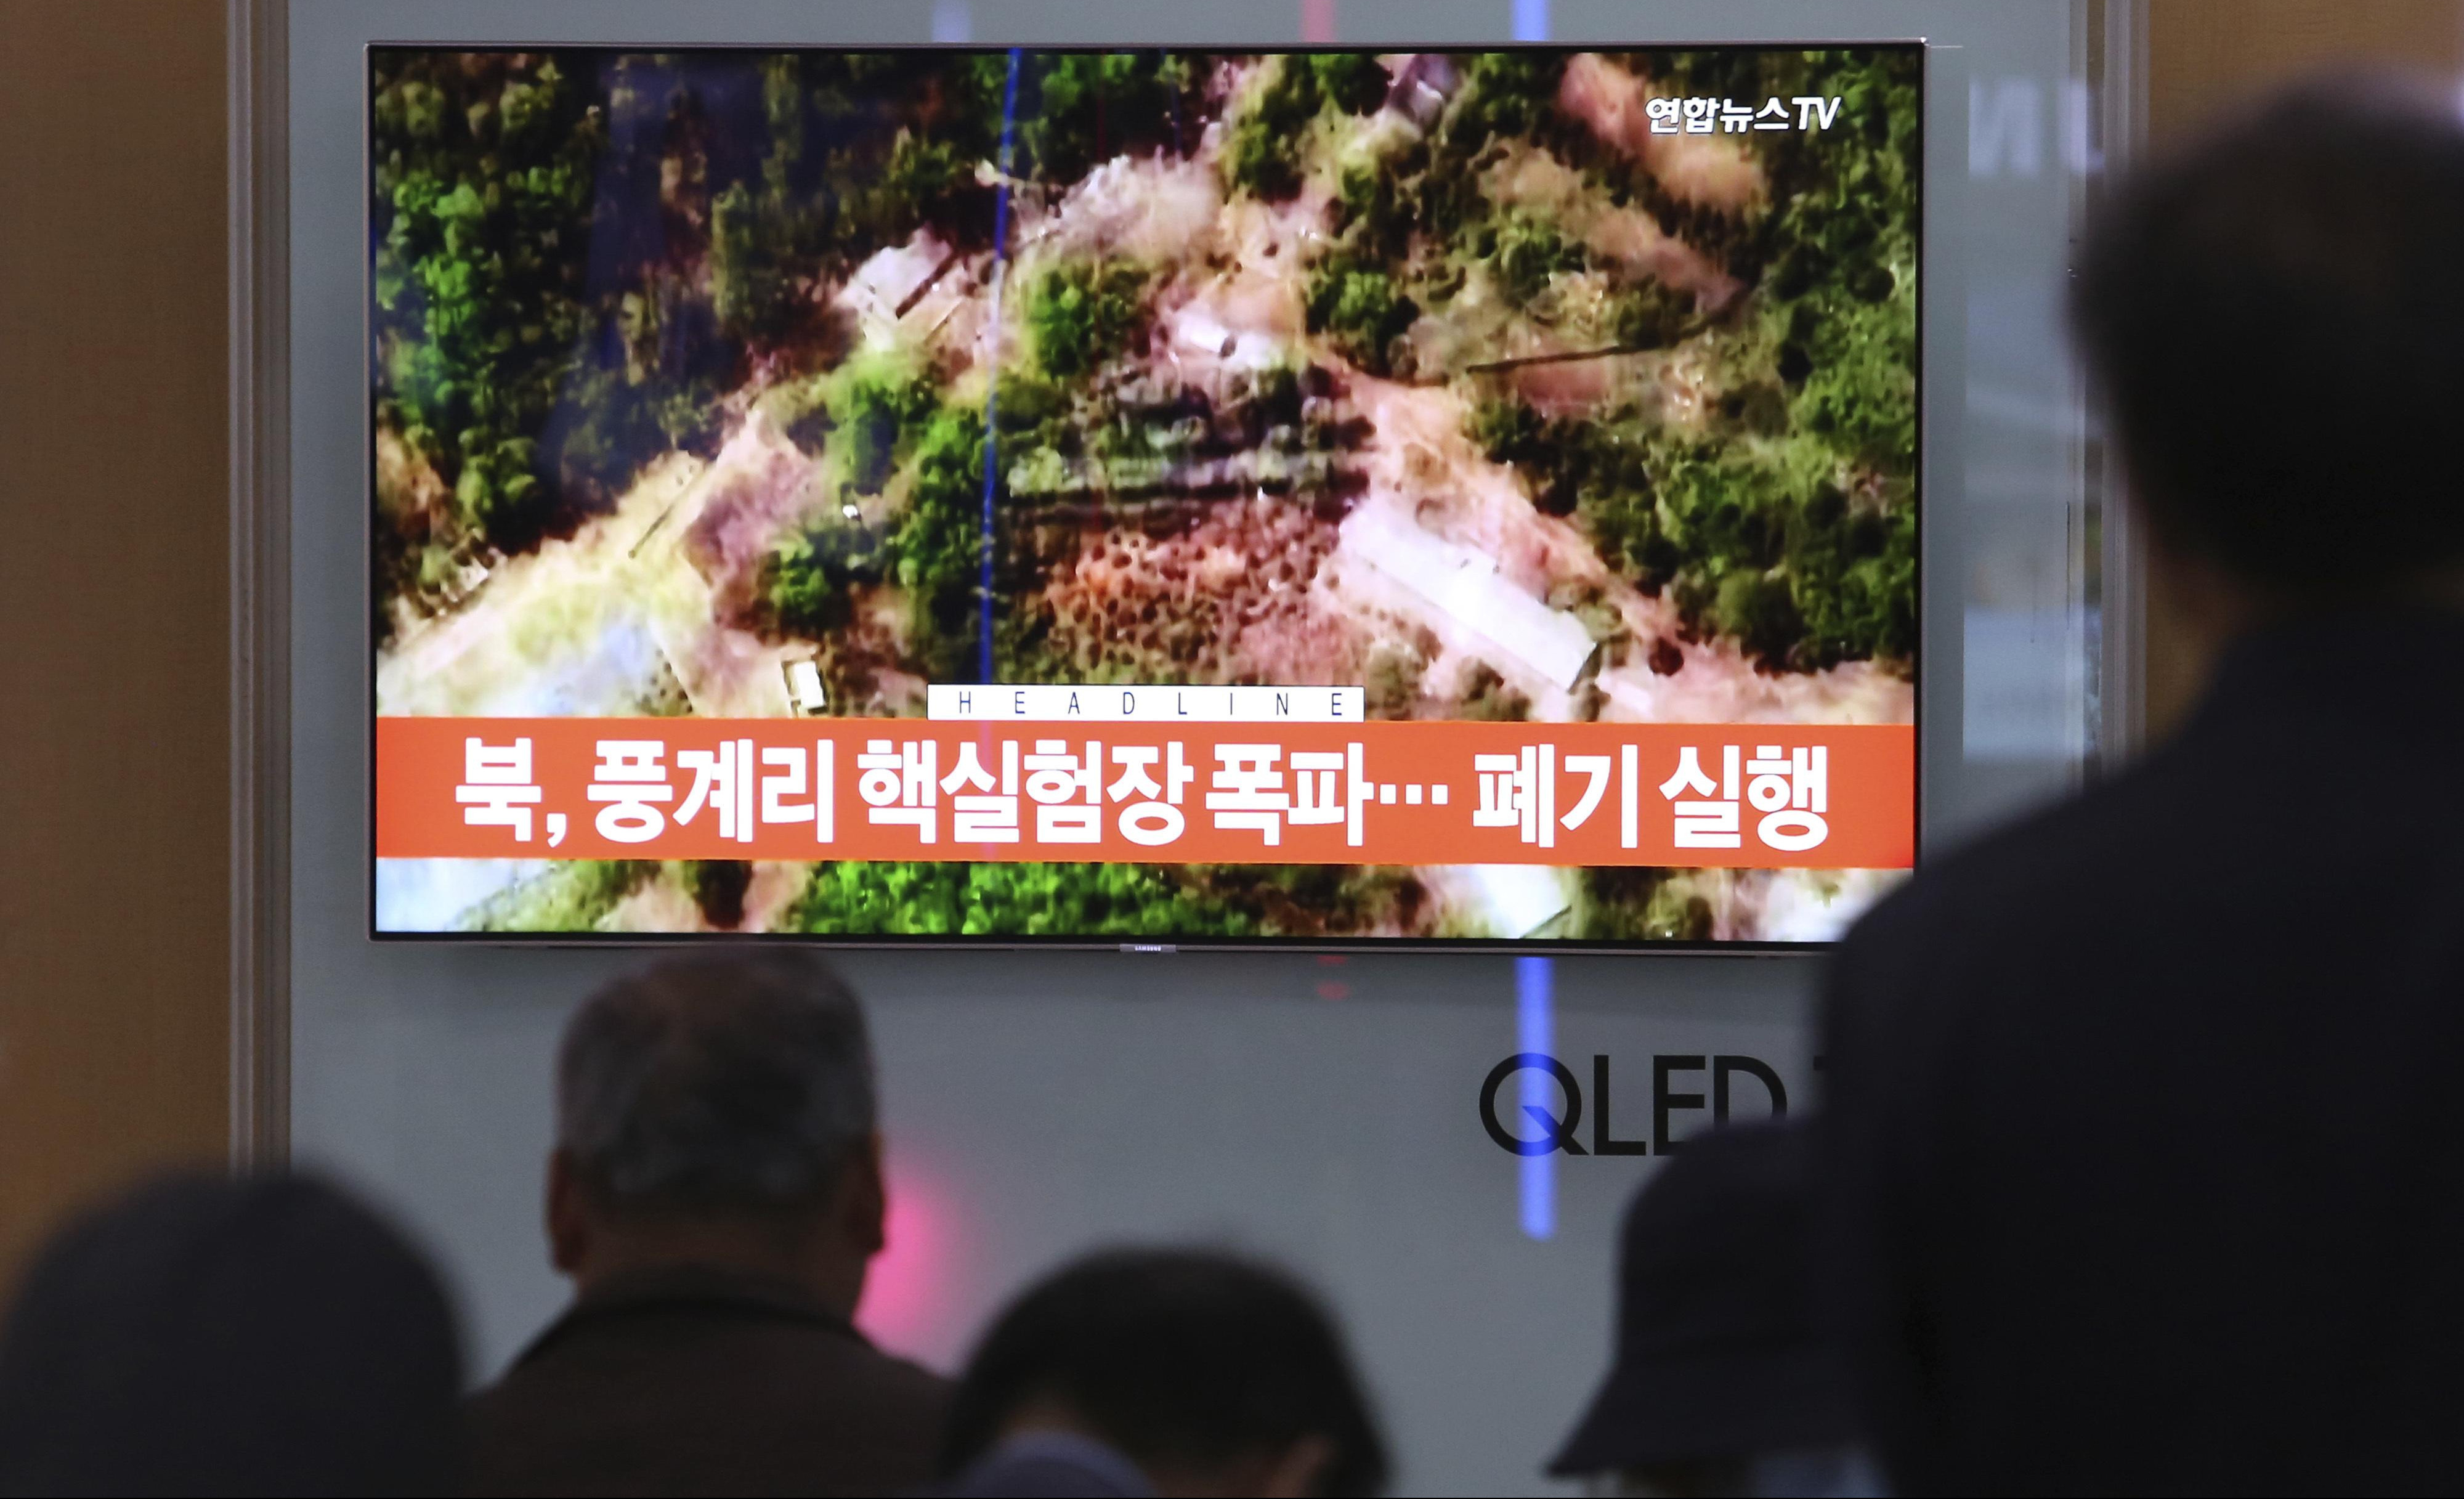 SVET JE OD DANAS BEZBEDNIJI: Severna Koreja uništila poligon za nuklearne probe!